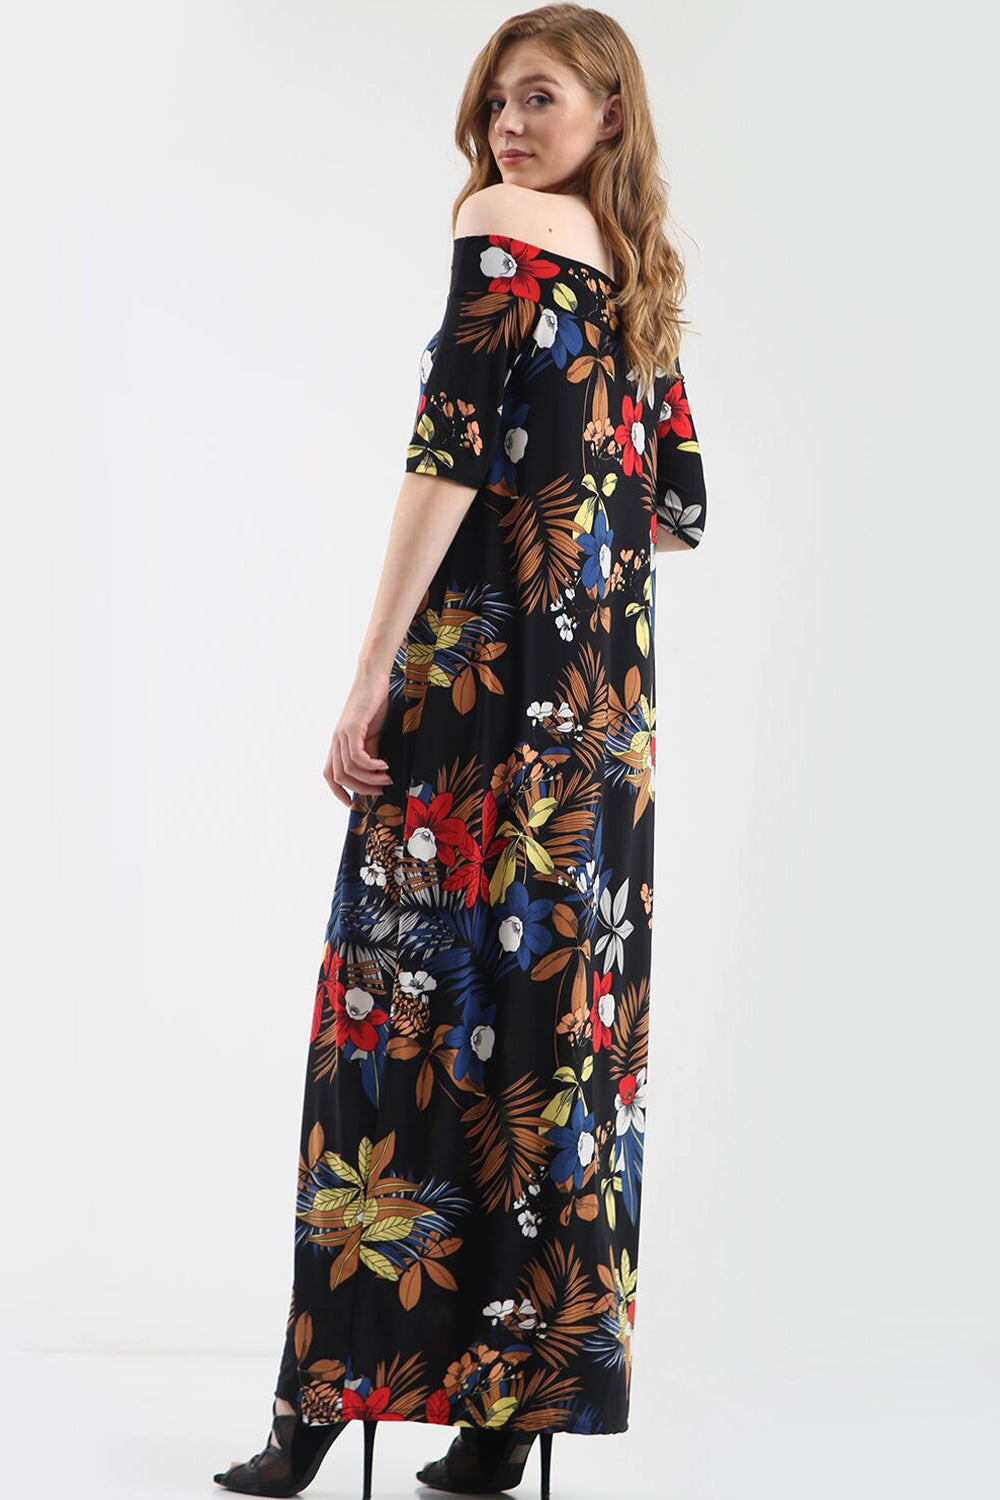 Off Shoulder Black Floral Print Maxi Dress - bejealous-com